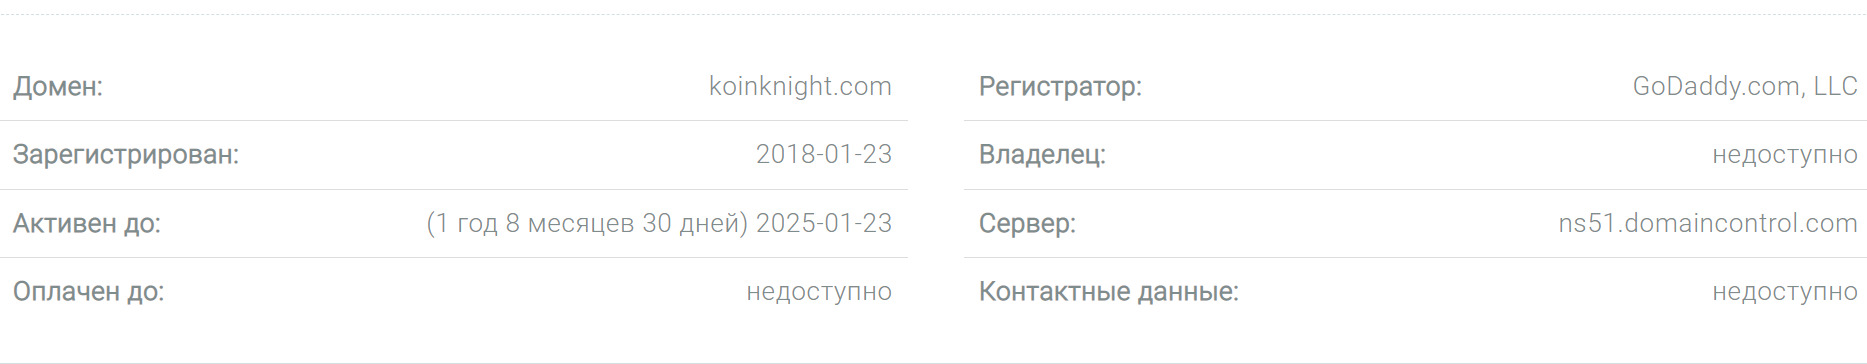 Проверка домена Koinknight